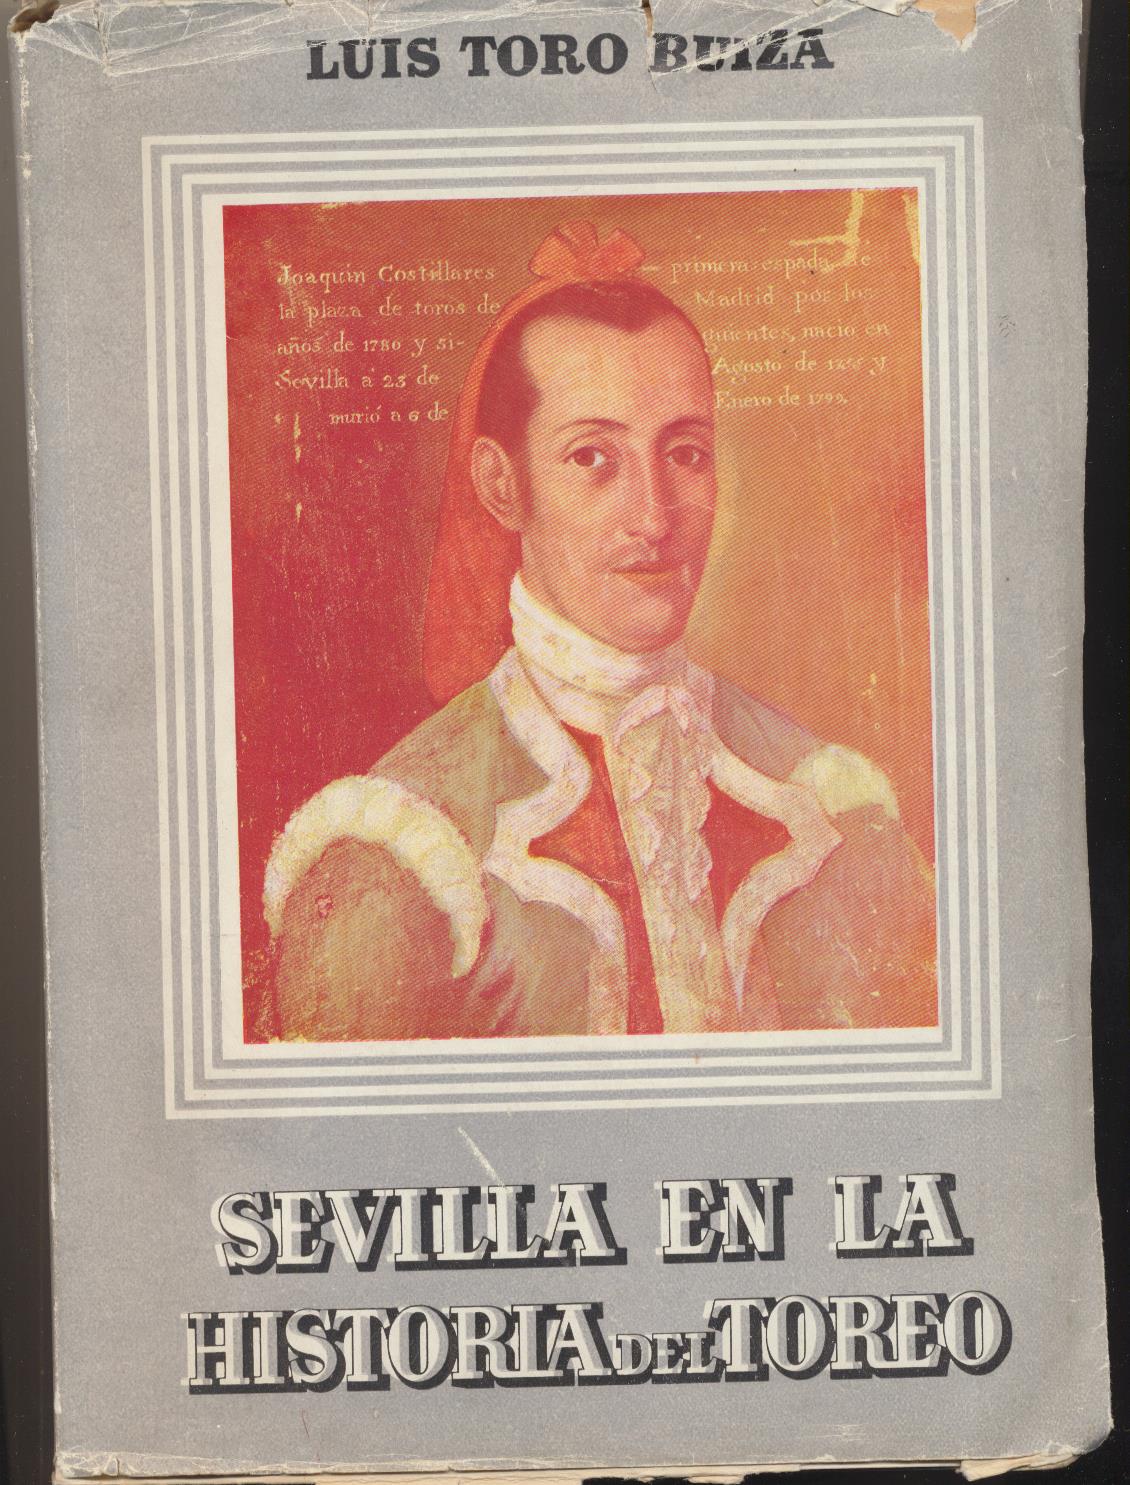 Luis Toro Buiza. Sevilla en la Historia del Toreo. Ayuntamiento de Sevilla 1947